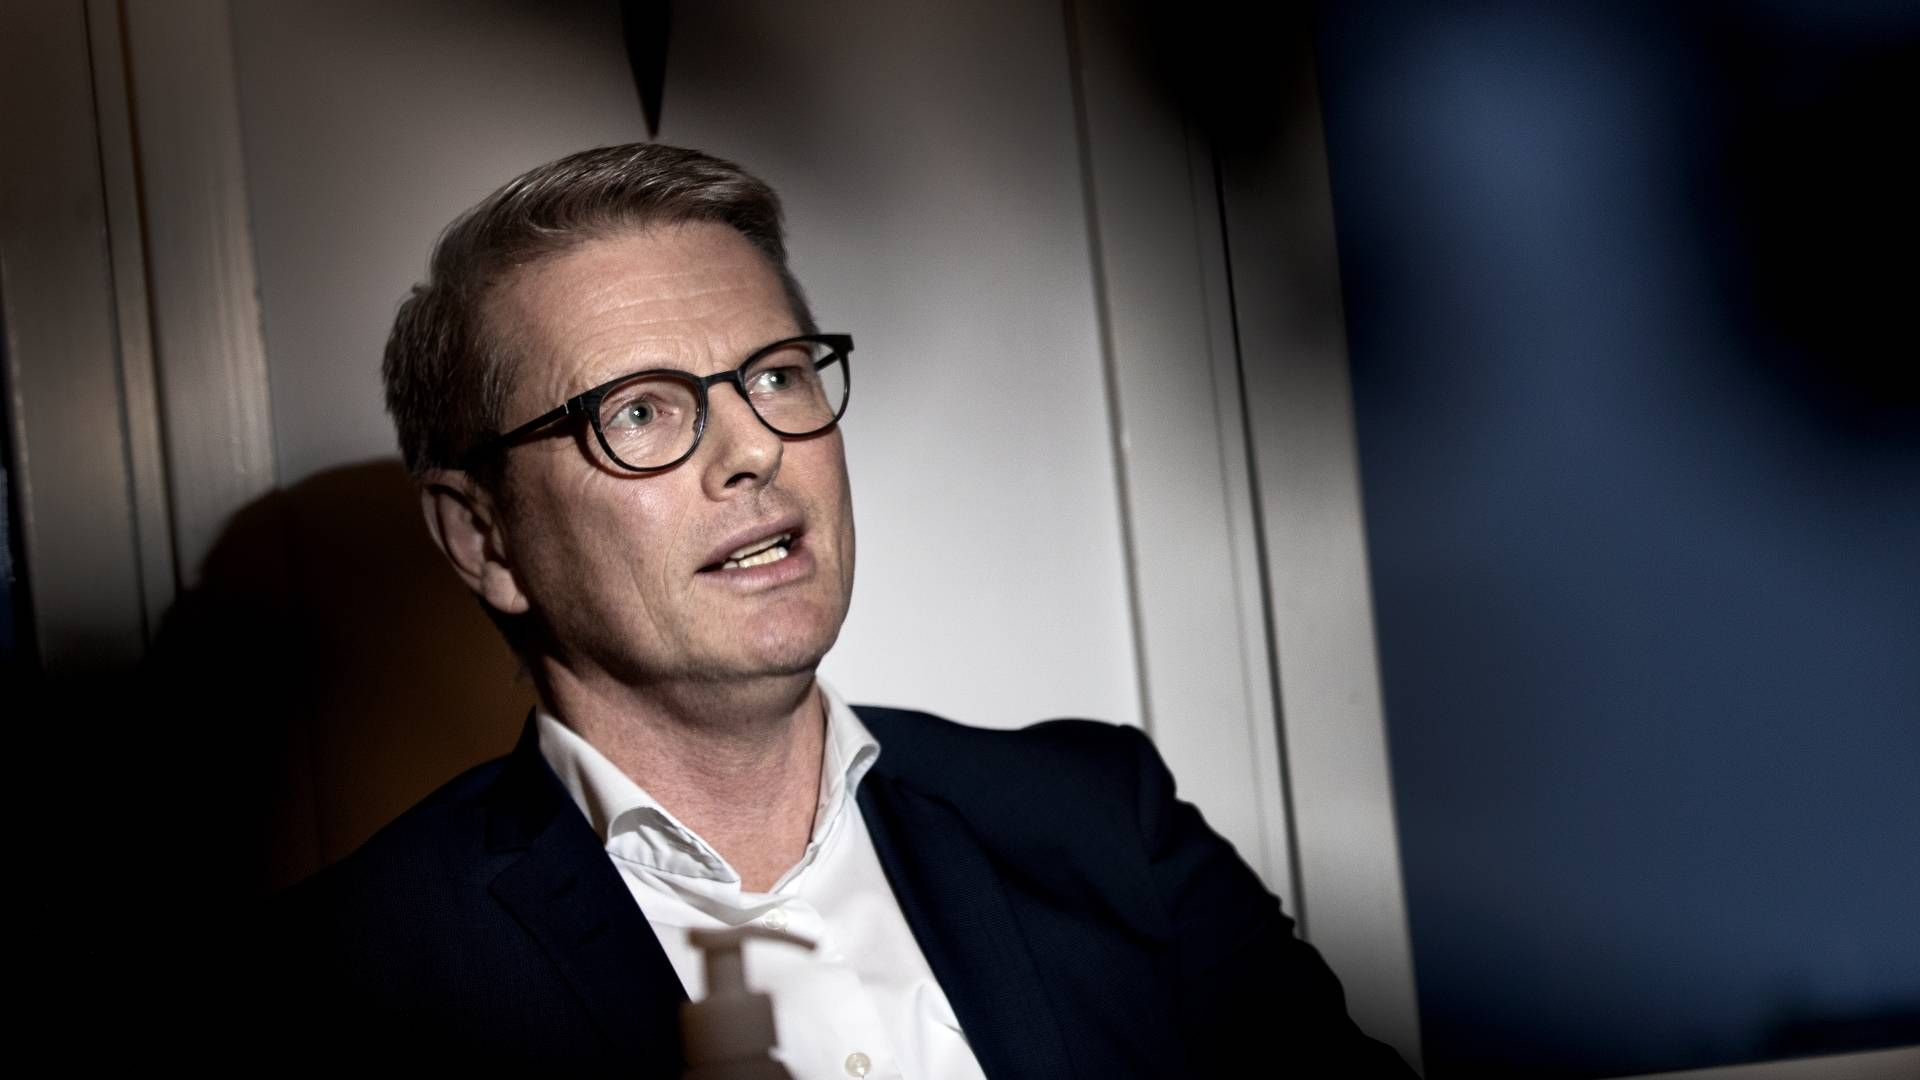 Udviklingsminister Flemming Møller Mortensen (S) | Foto: Jacob Ehrbahn/Politiken